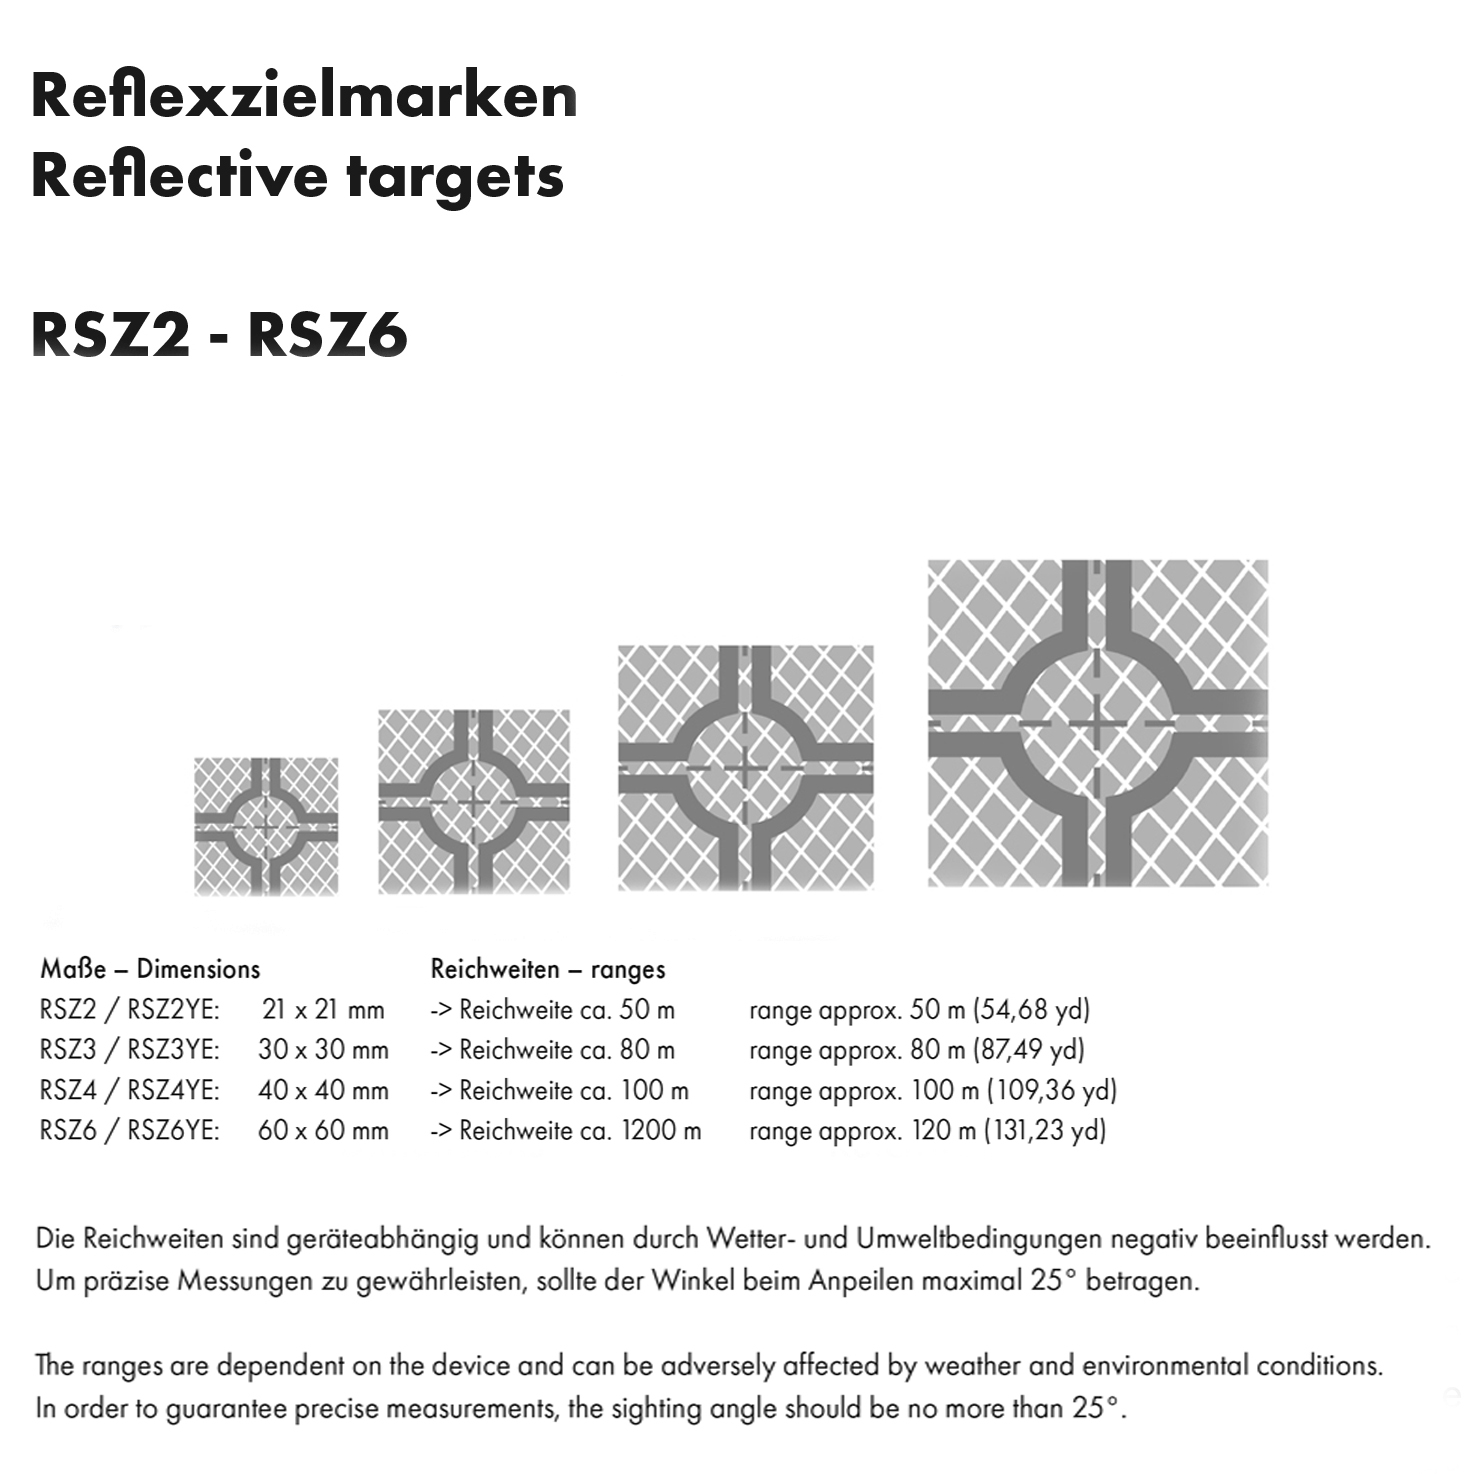 Reflexzielmarken - selbstklebend - RSZ6 60 x 60 mm auf Folie Zielweite ca. 120 m